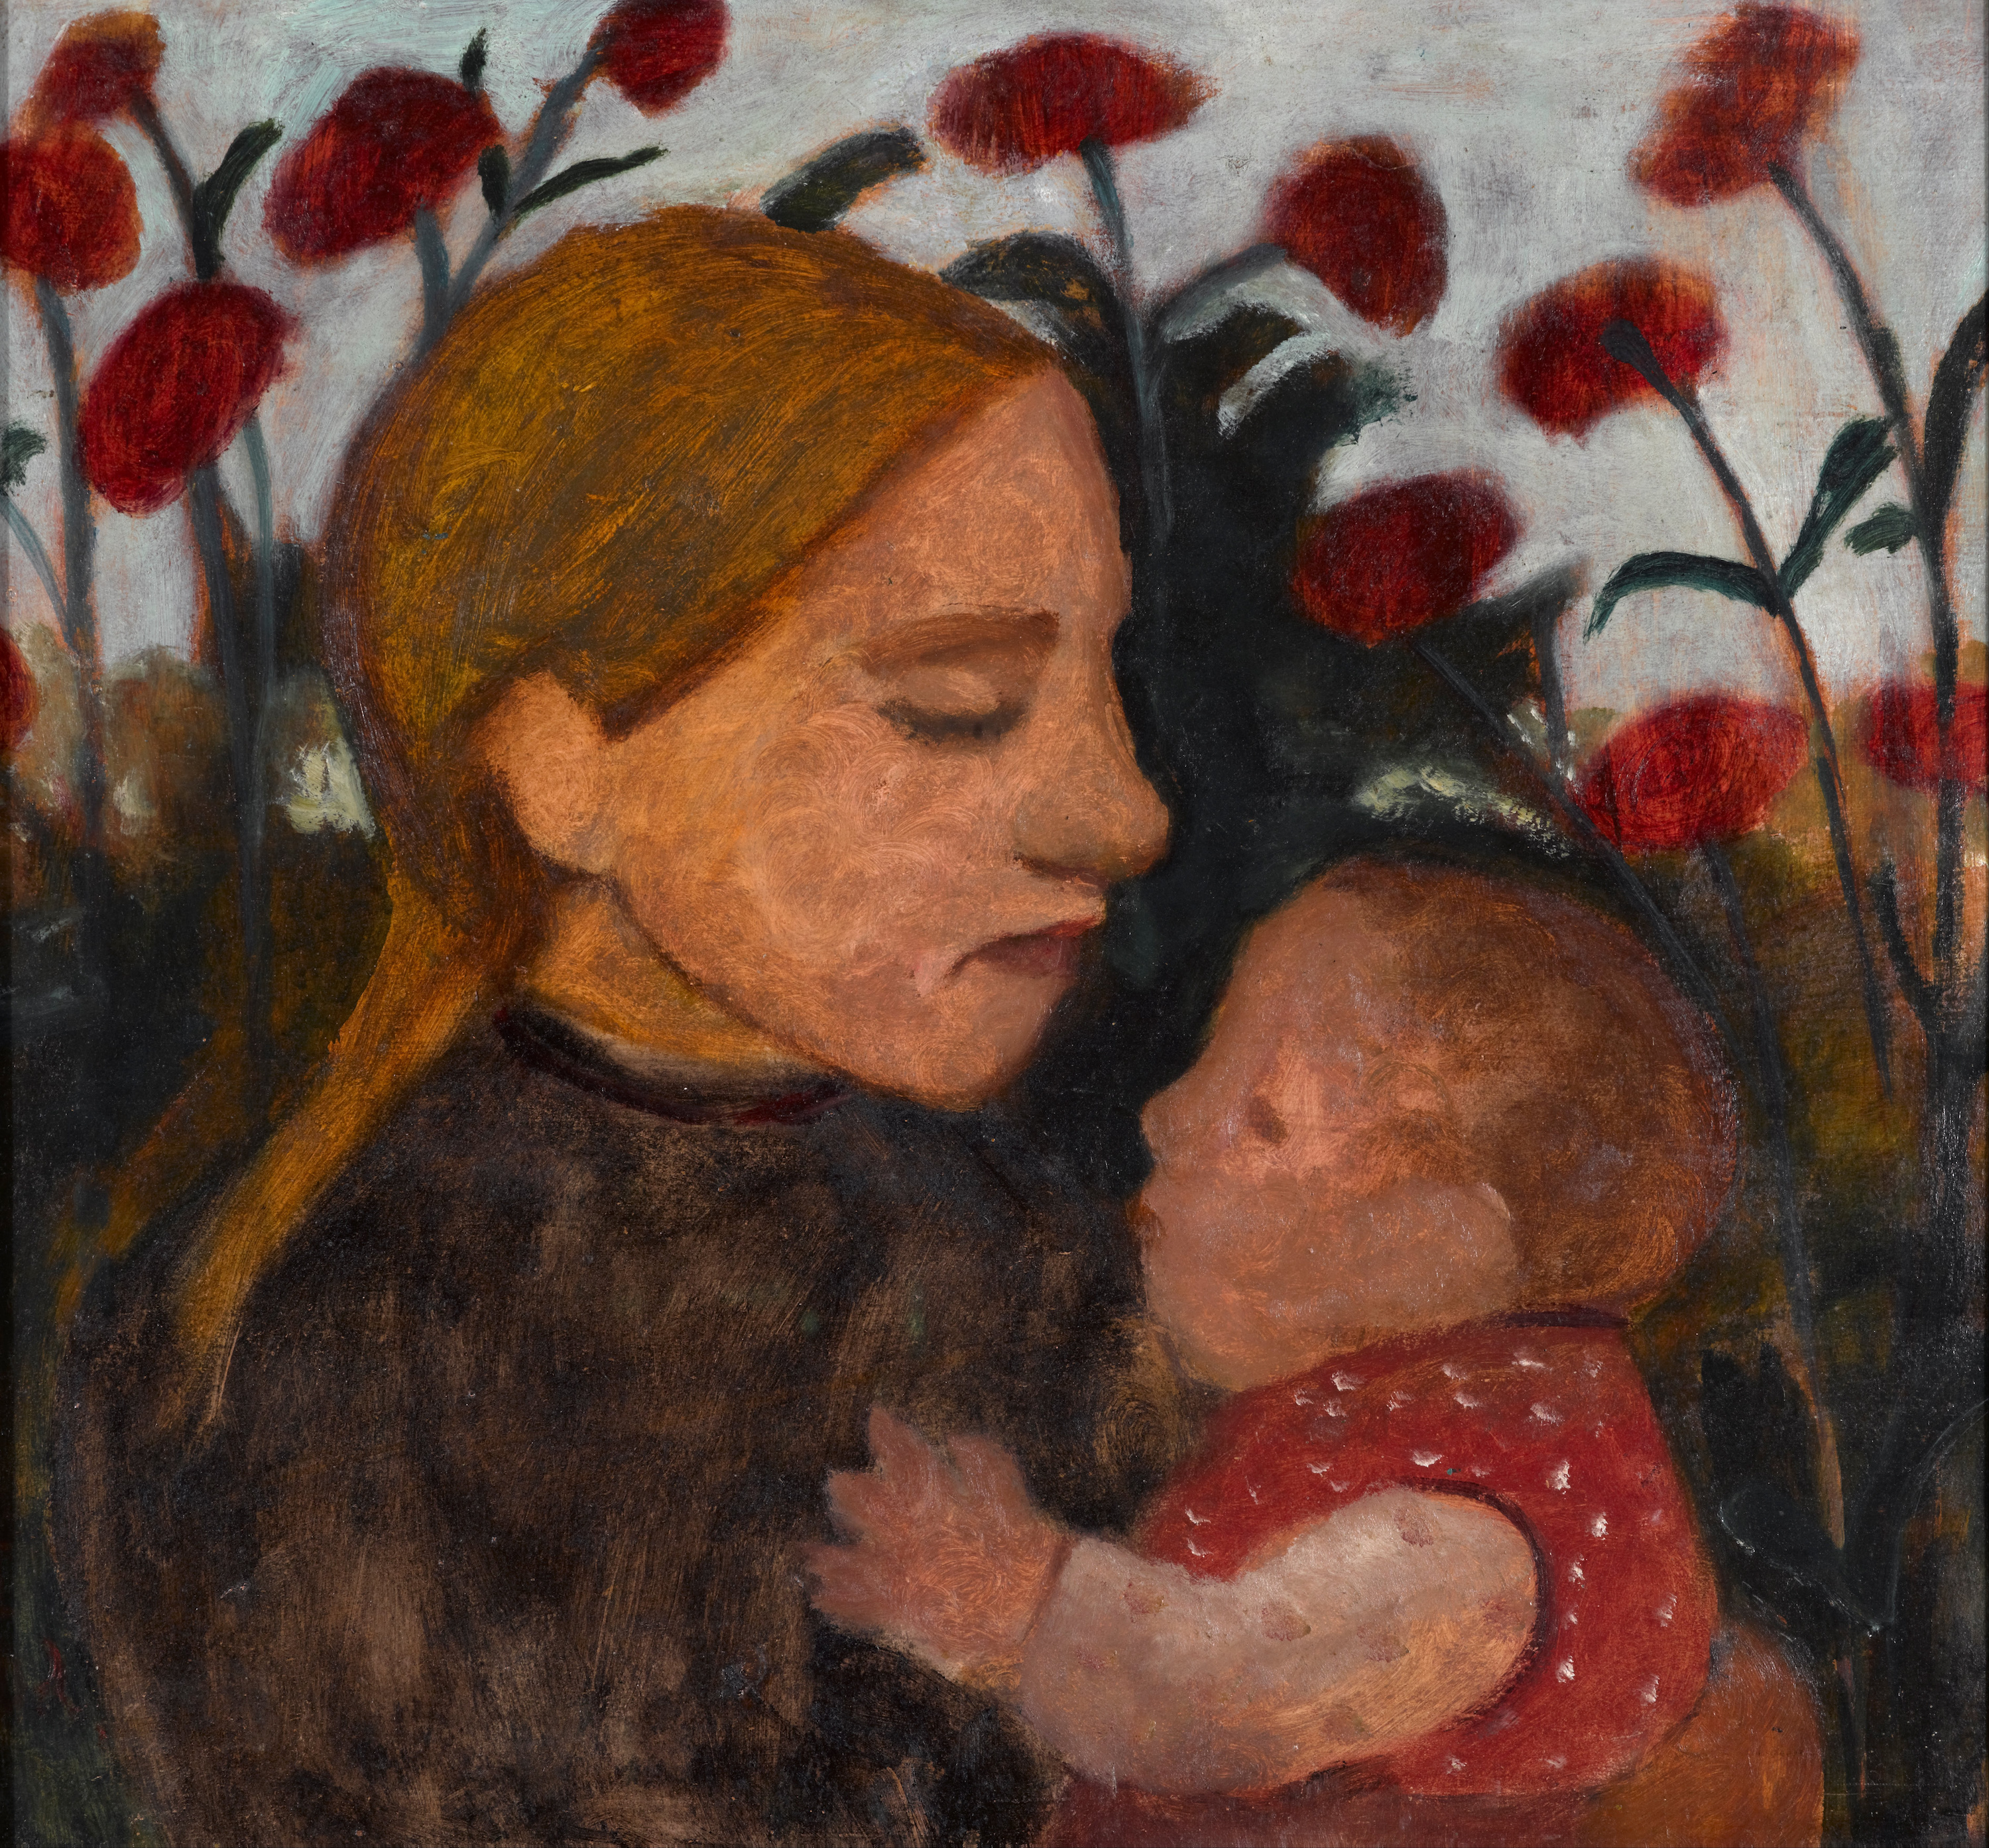 Mädchen mit Kind by Paula Modersohn-Becker - 1902 - 71 x 66.3 cm Kunstmuseum Den Haag